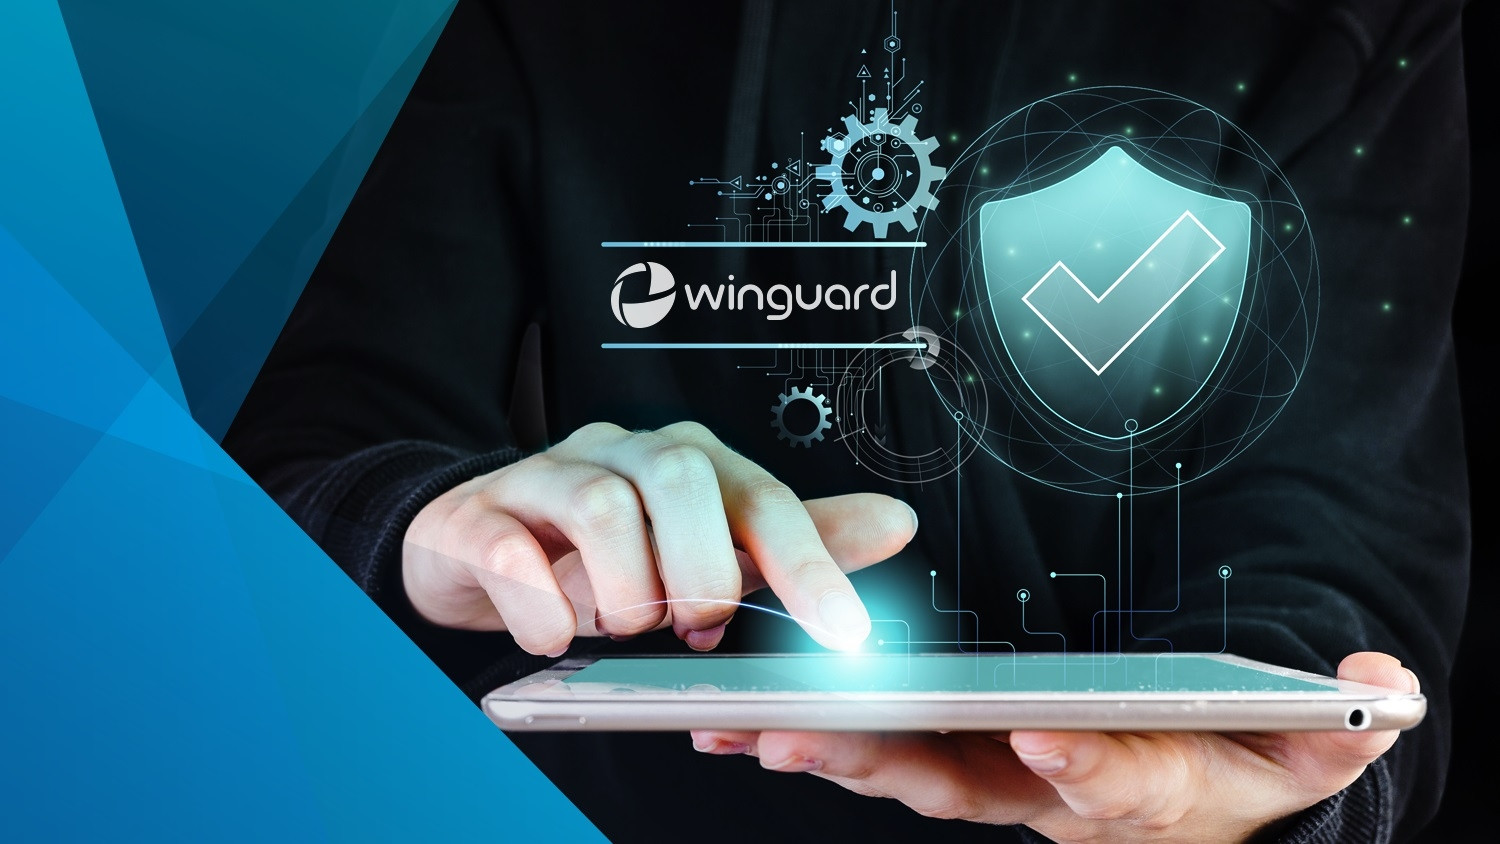 Advancis erweitert das Portfolio der unterstützten Systeme – inzwischen sind über 500 Schnittstellen zu Drittsystemen in Winguard integriert. 